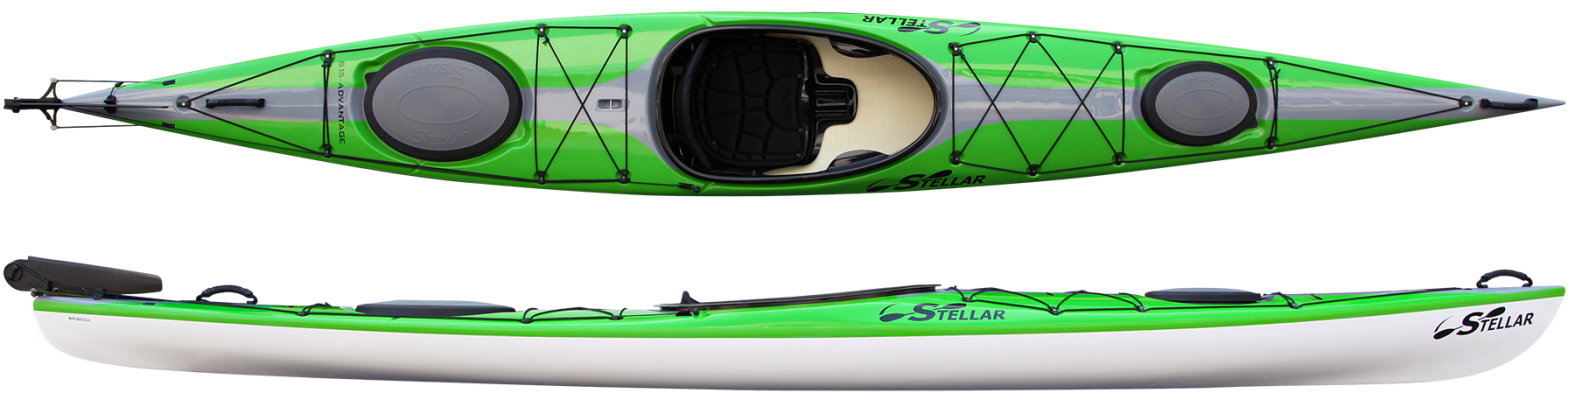 Stellar S15′ Touring Kayak (S15LV)  From $4,045